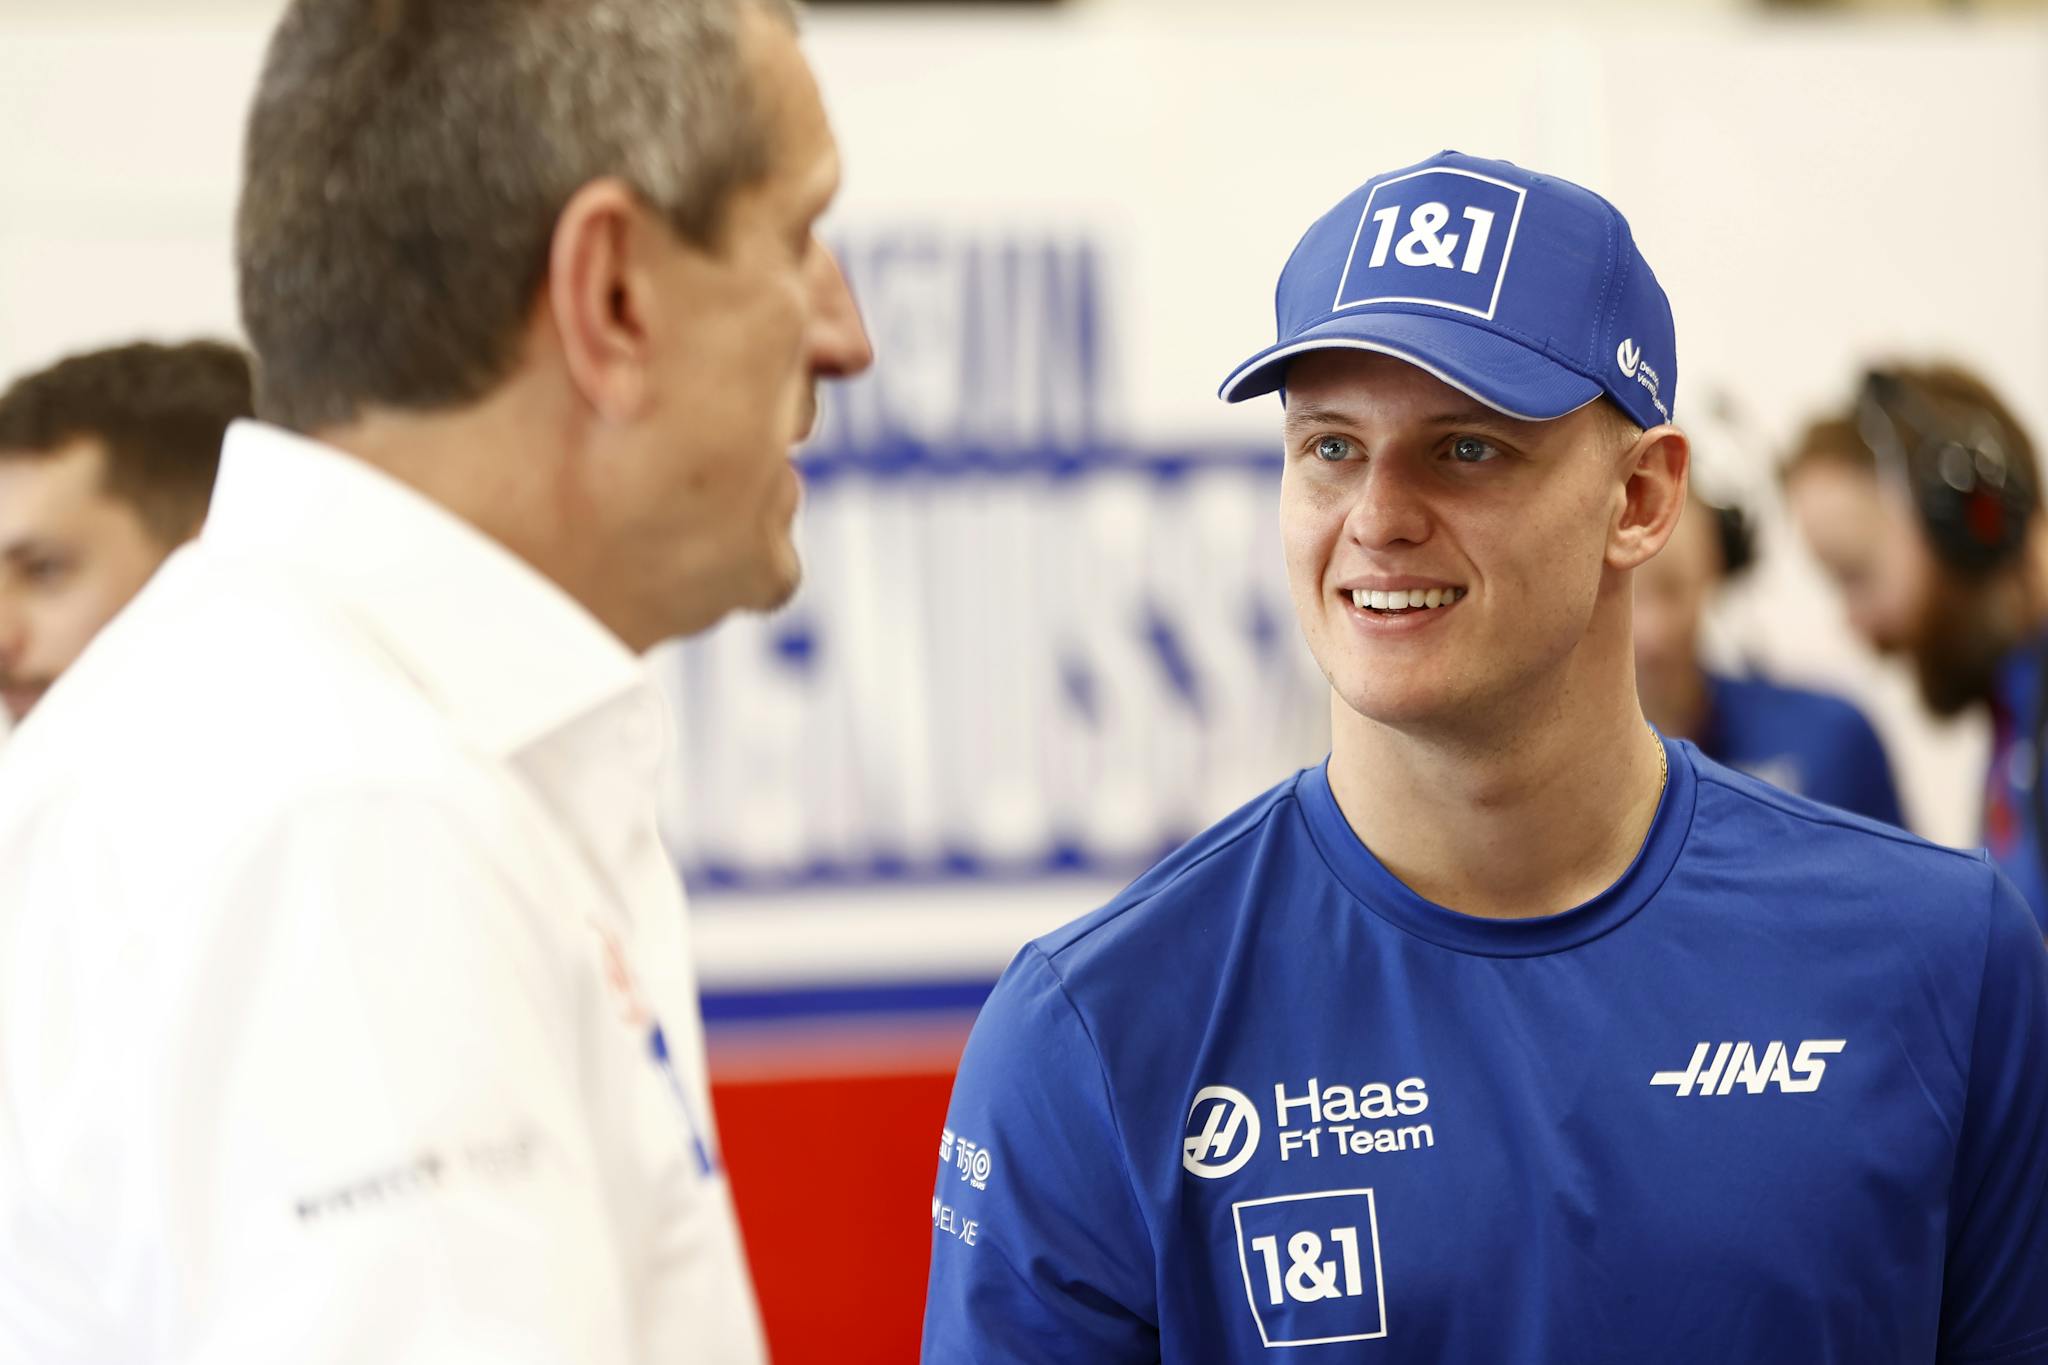 Schumacher skrytykował Steinera za brak odpowiedniego wsparcia